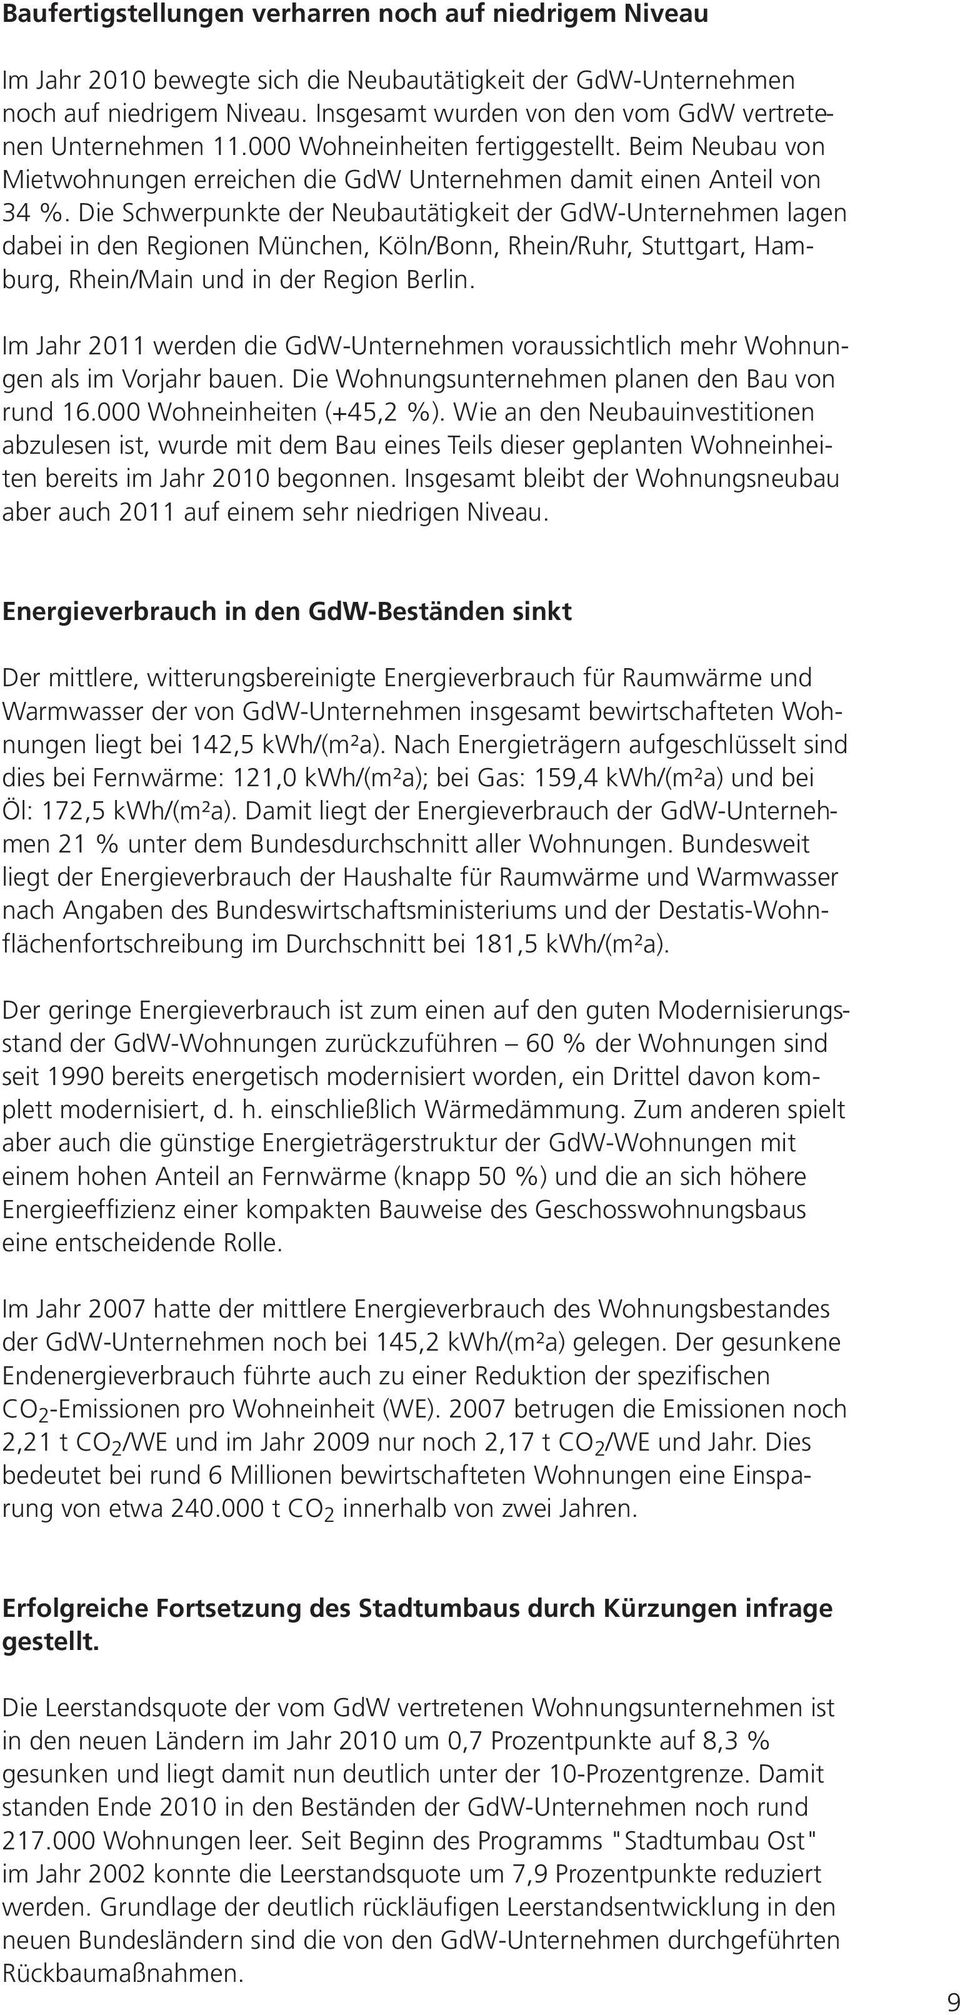 Die Schwerpunkte der Neubautätigkeit der GdW-Unternehmen lagen dabei in den Regionen München, Köln/Bonn, Rhein/Ruhr, Stuttgart, Hamburg, Rhein/Main und in der Region Berlin.